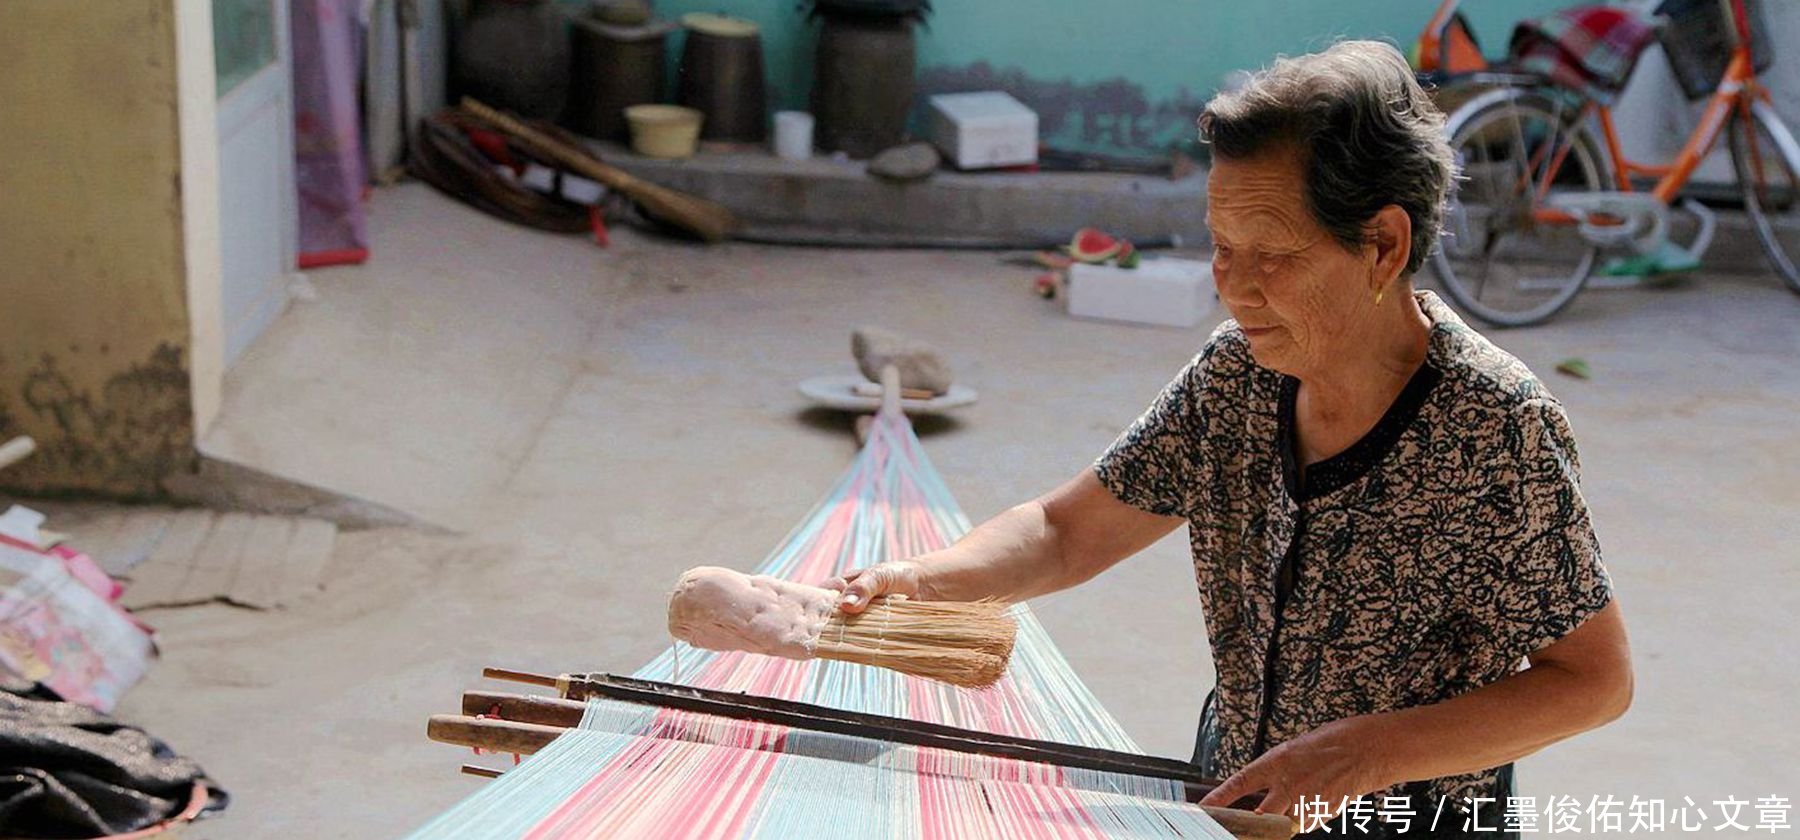 农村80岁老人巧手织棉布,她说治好10多年的颈